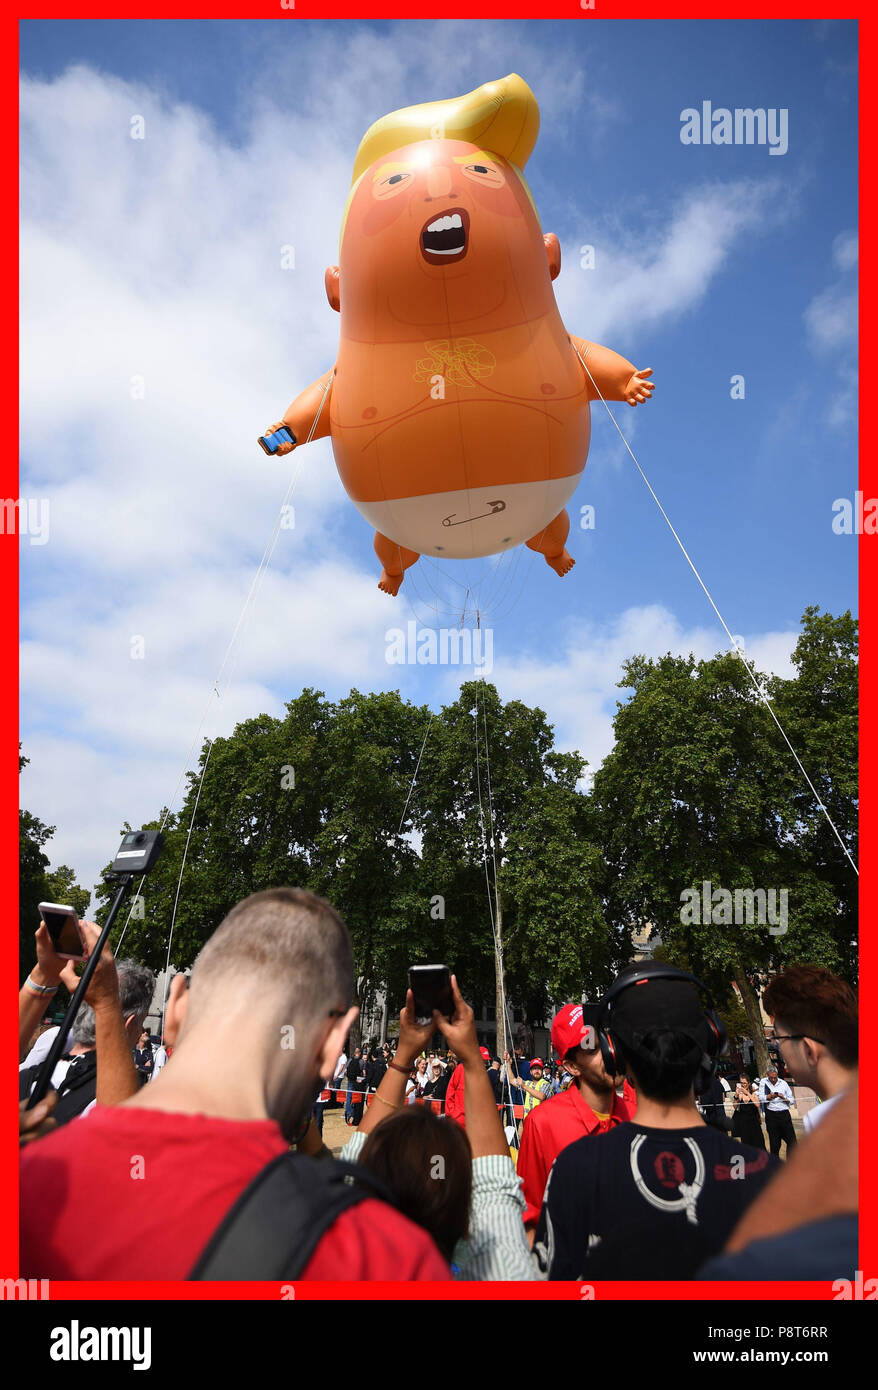 PABest ein Baby Trump' Ballon steigt nach im Londoner Parlament Platz aufgeblasen wird, als Teil der Proteste gegen den Besuch von US-Präsident Donald Trump nach Großbritannien. Stockfoto